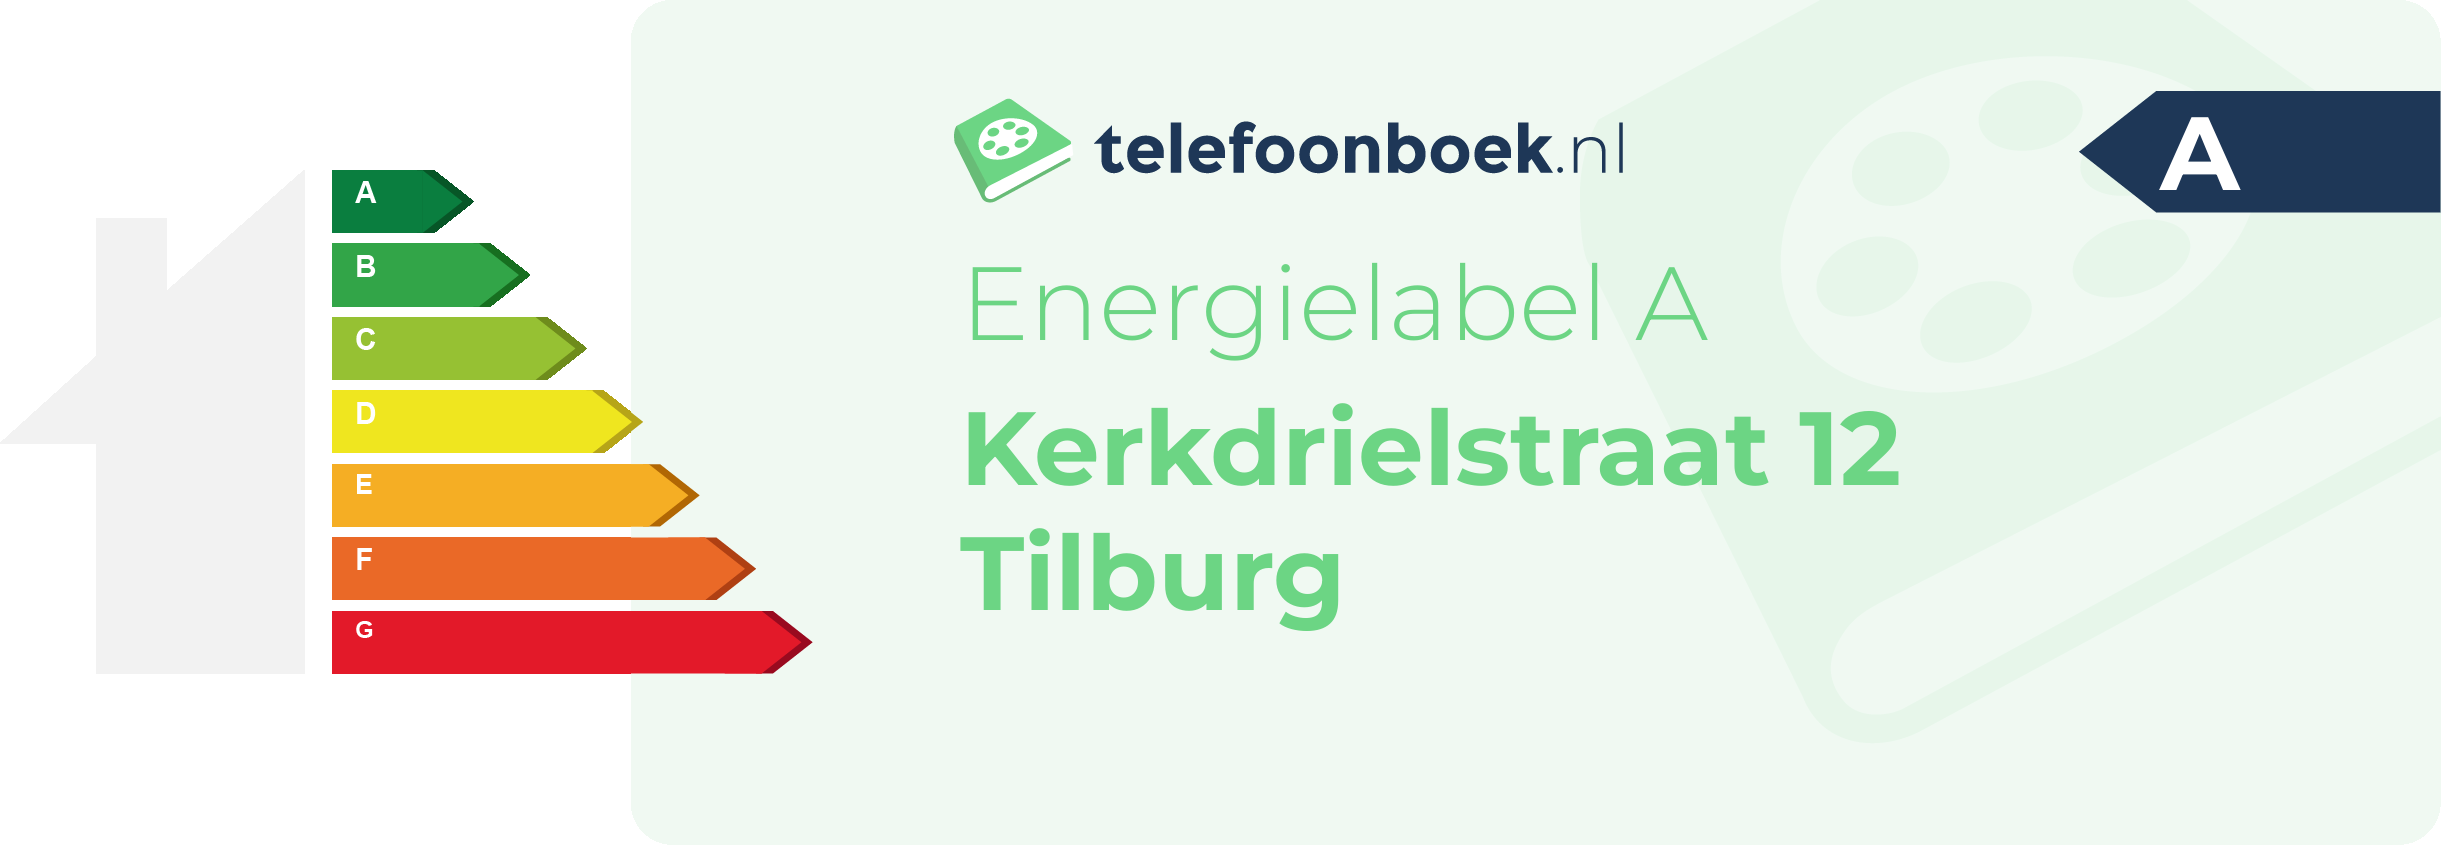 Energielabel Kerkdrielstraat 12 Tilburg